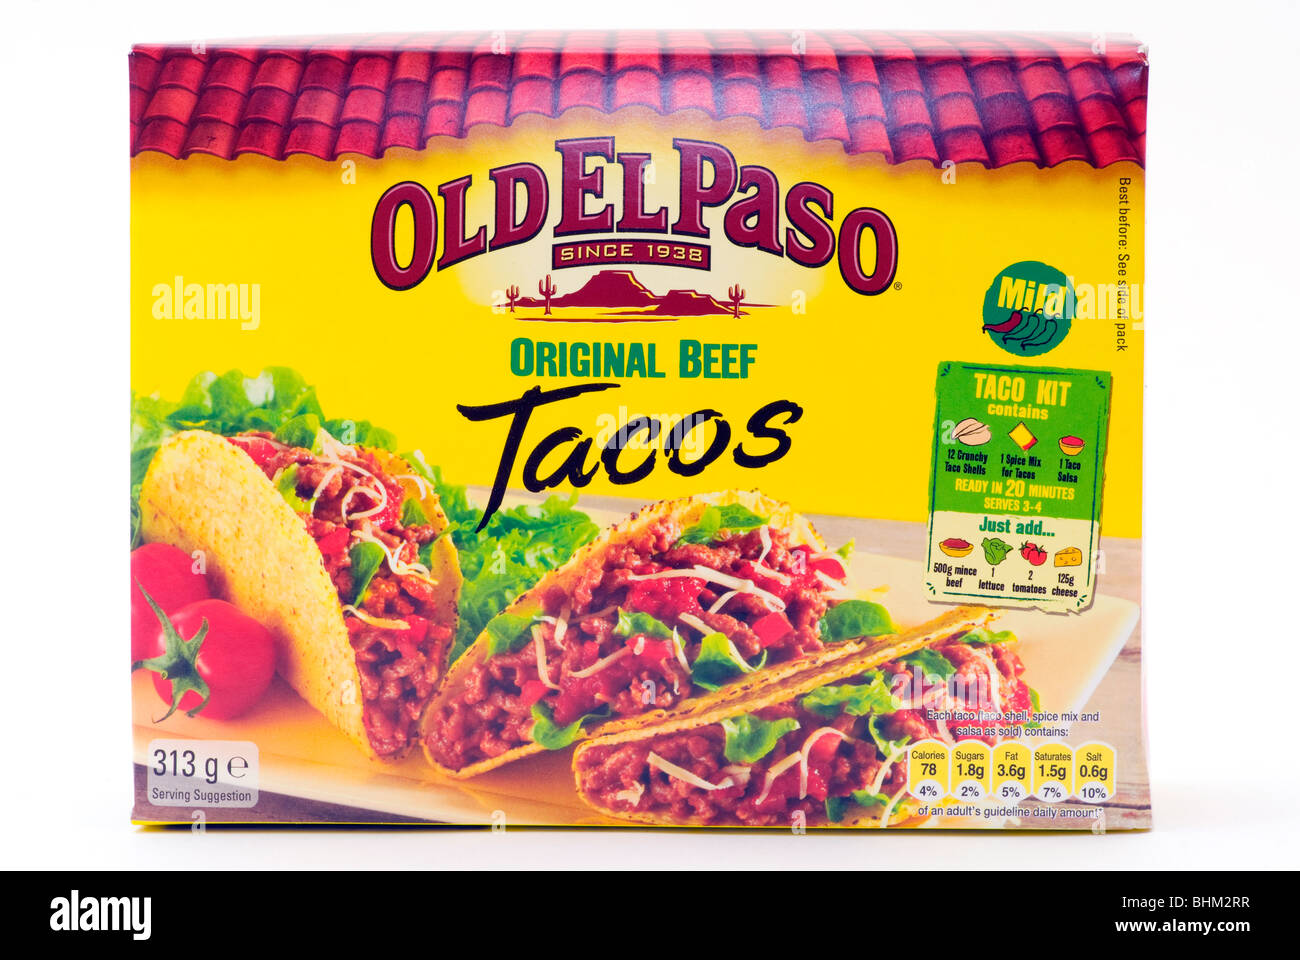 Caja de Old El Paso tacos de carne Original aislado sobre un fondo blanco  Fotografía de stock - Alamy